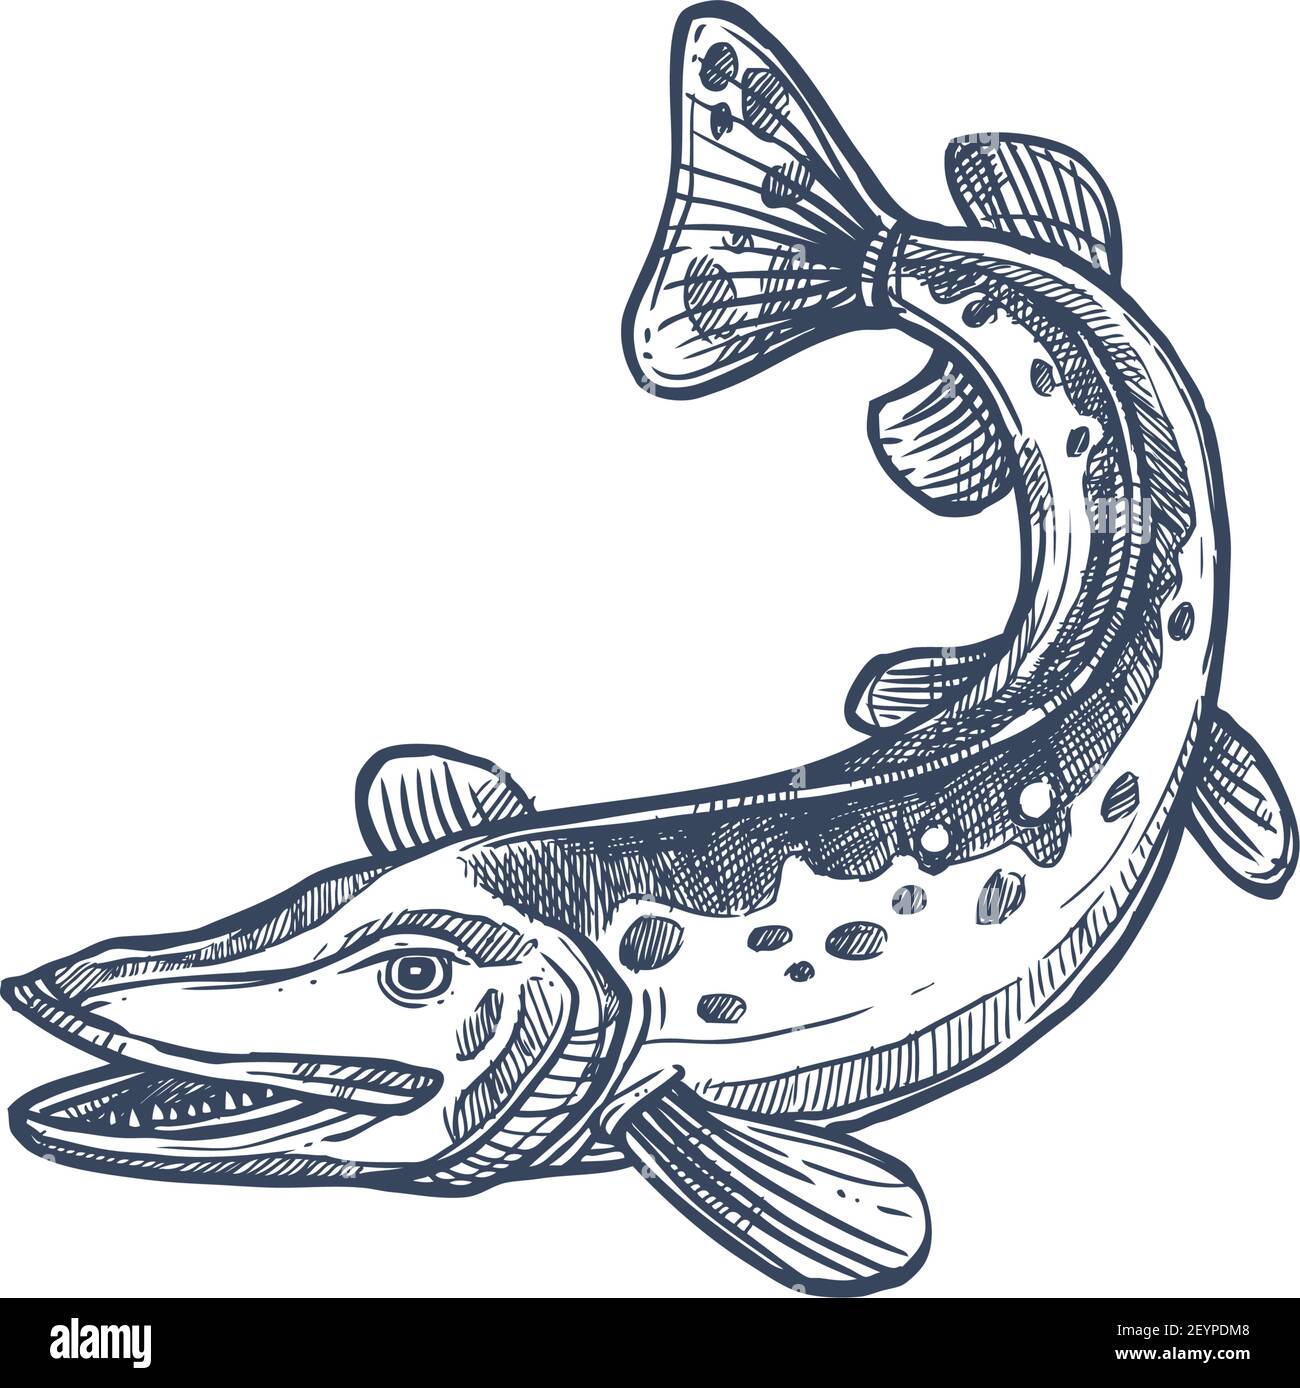 Pickerel o esox fish, schizzo monocromatico isolato di luccio d'acqua dolce. Vettore allungato siluro-come pesci predatori, sgombro luccio o sauria del Pacifico. Mano Illustrazione Vettoriale